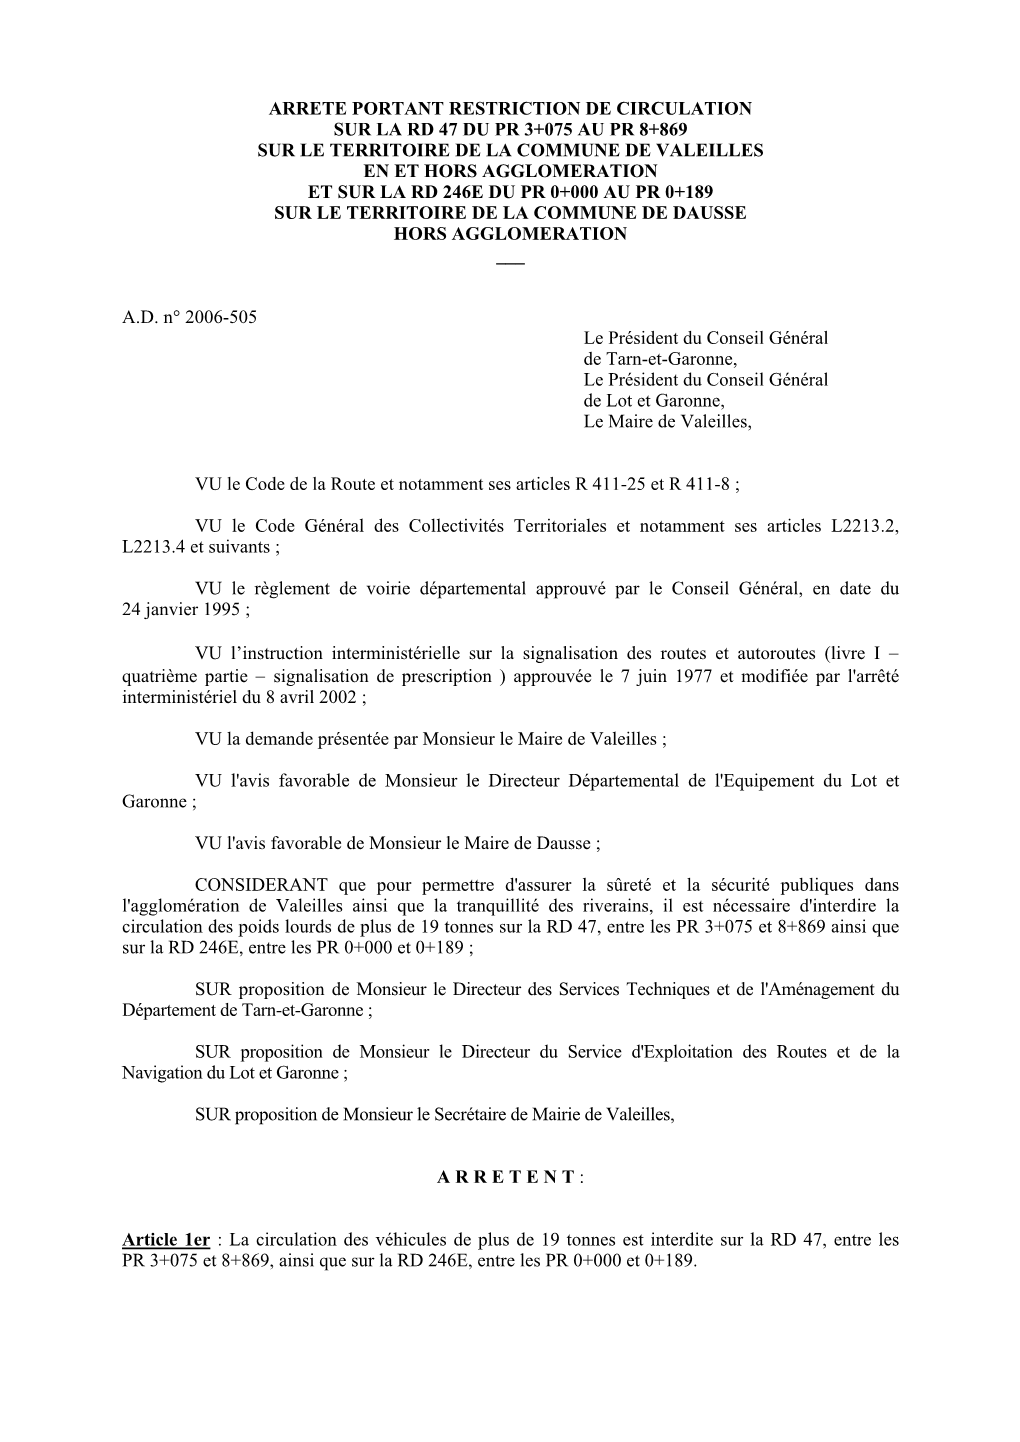 Arrete Portant Restriction De Circulation Sur La Rd 47 Du Pr 3+075 Au Pr 8+869 Sur Le Territoire De La Commune De Valeilles En E